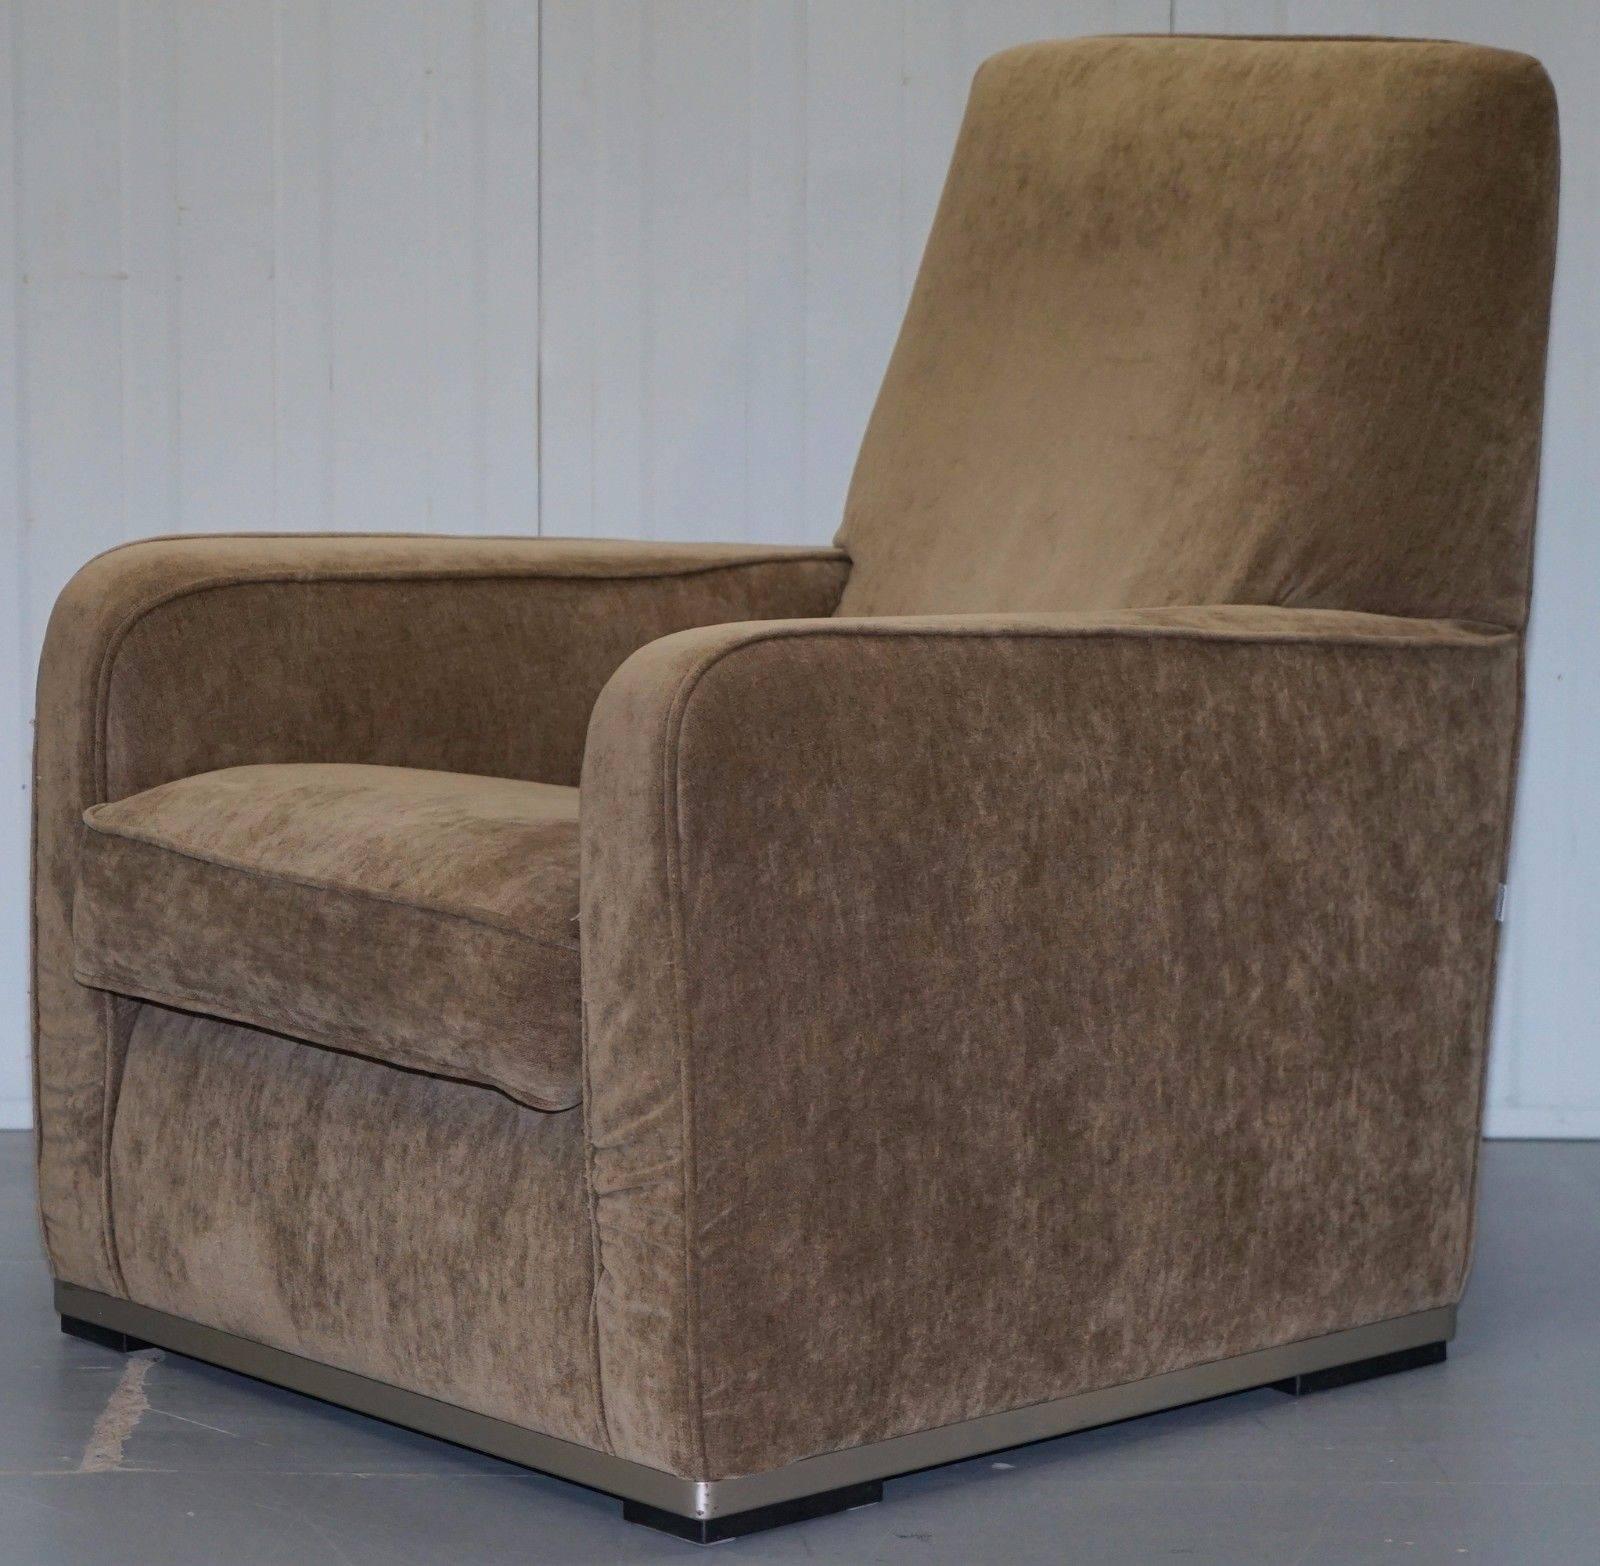 Wir freuen uns, dieses atemberaubende Paar von B&B Italia handgefertigten Maxalto Imprimatur Sesseln, entworfen von Antonio Citterio, zum Verkauf anzubieten (UVP £6000).

Die Stühle sind in schönem gebrauchten Zustand durch, die Polsterung ist